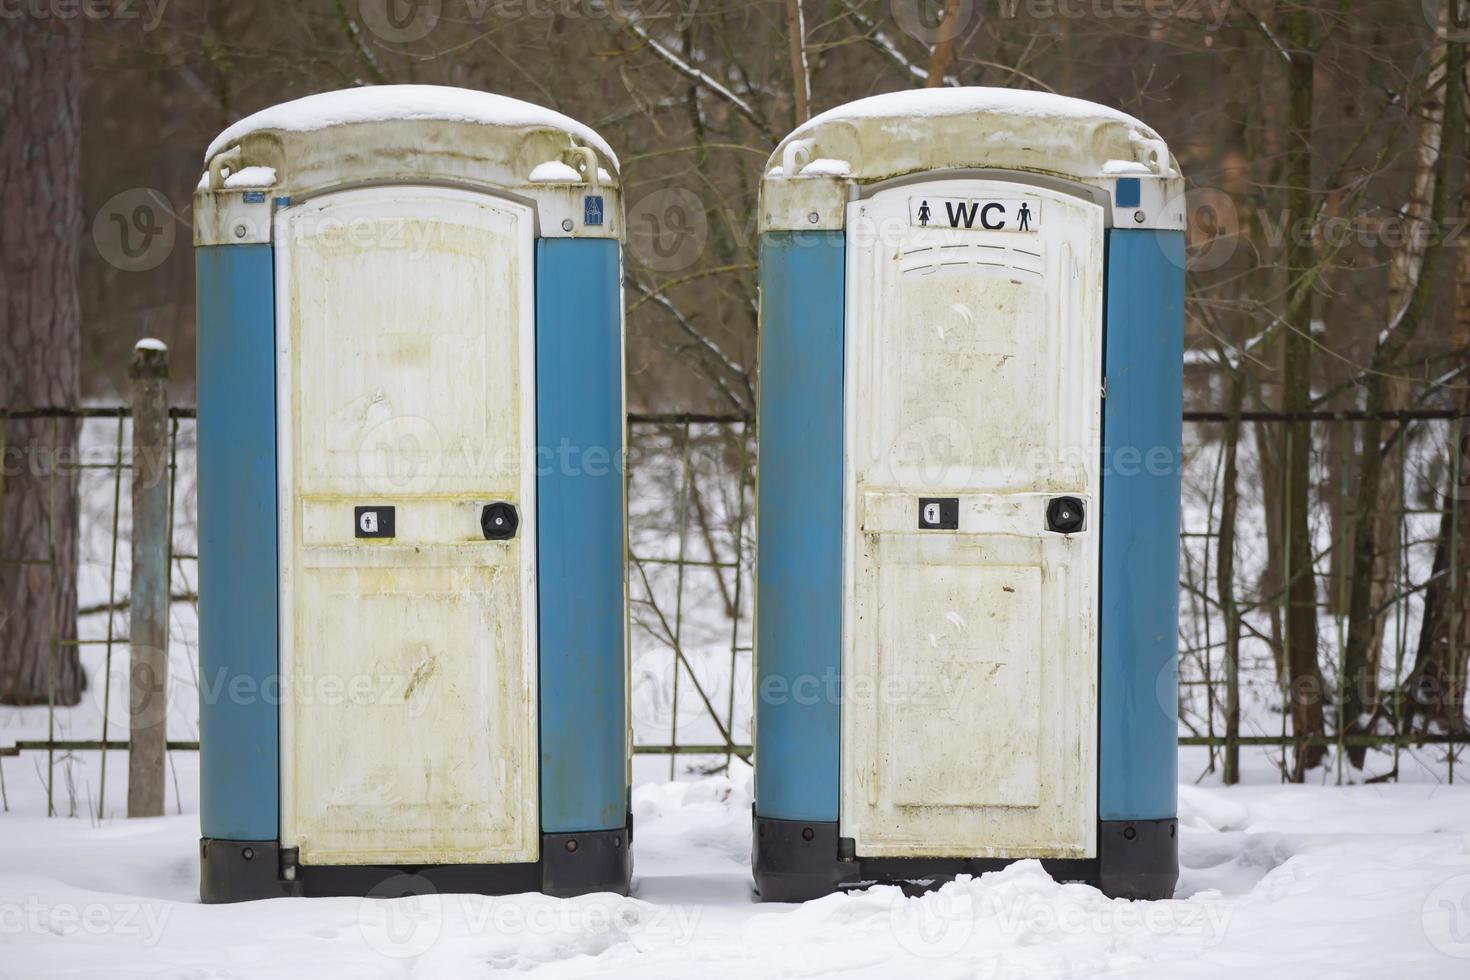 écologique mobile toilettes sont dans le parc. Publique portable bio toilettes toilettes dans parc photo